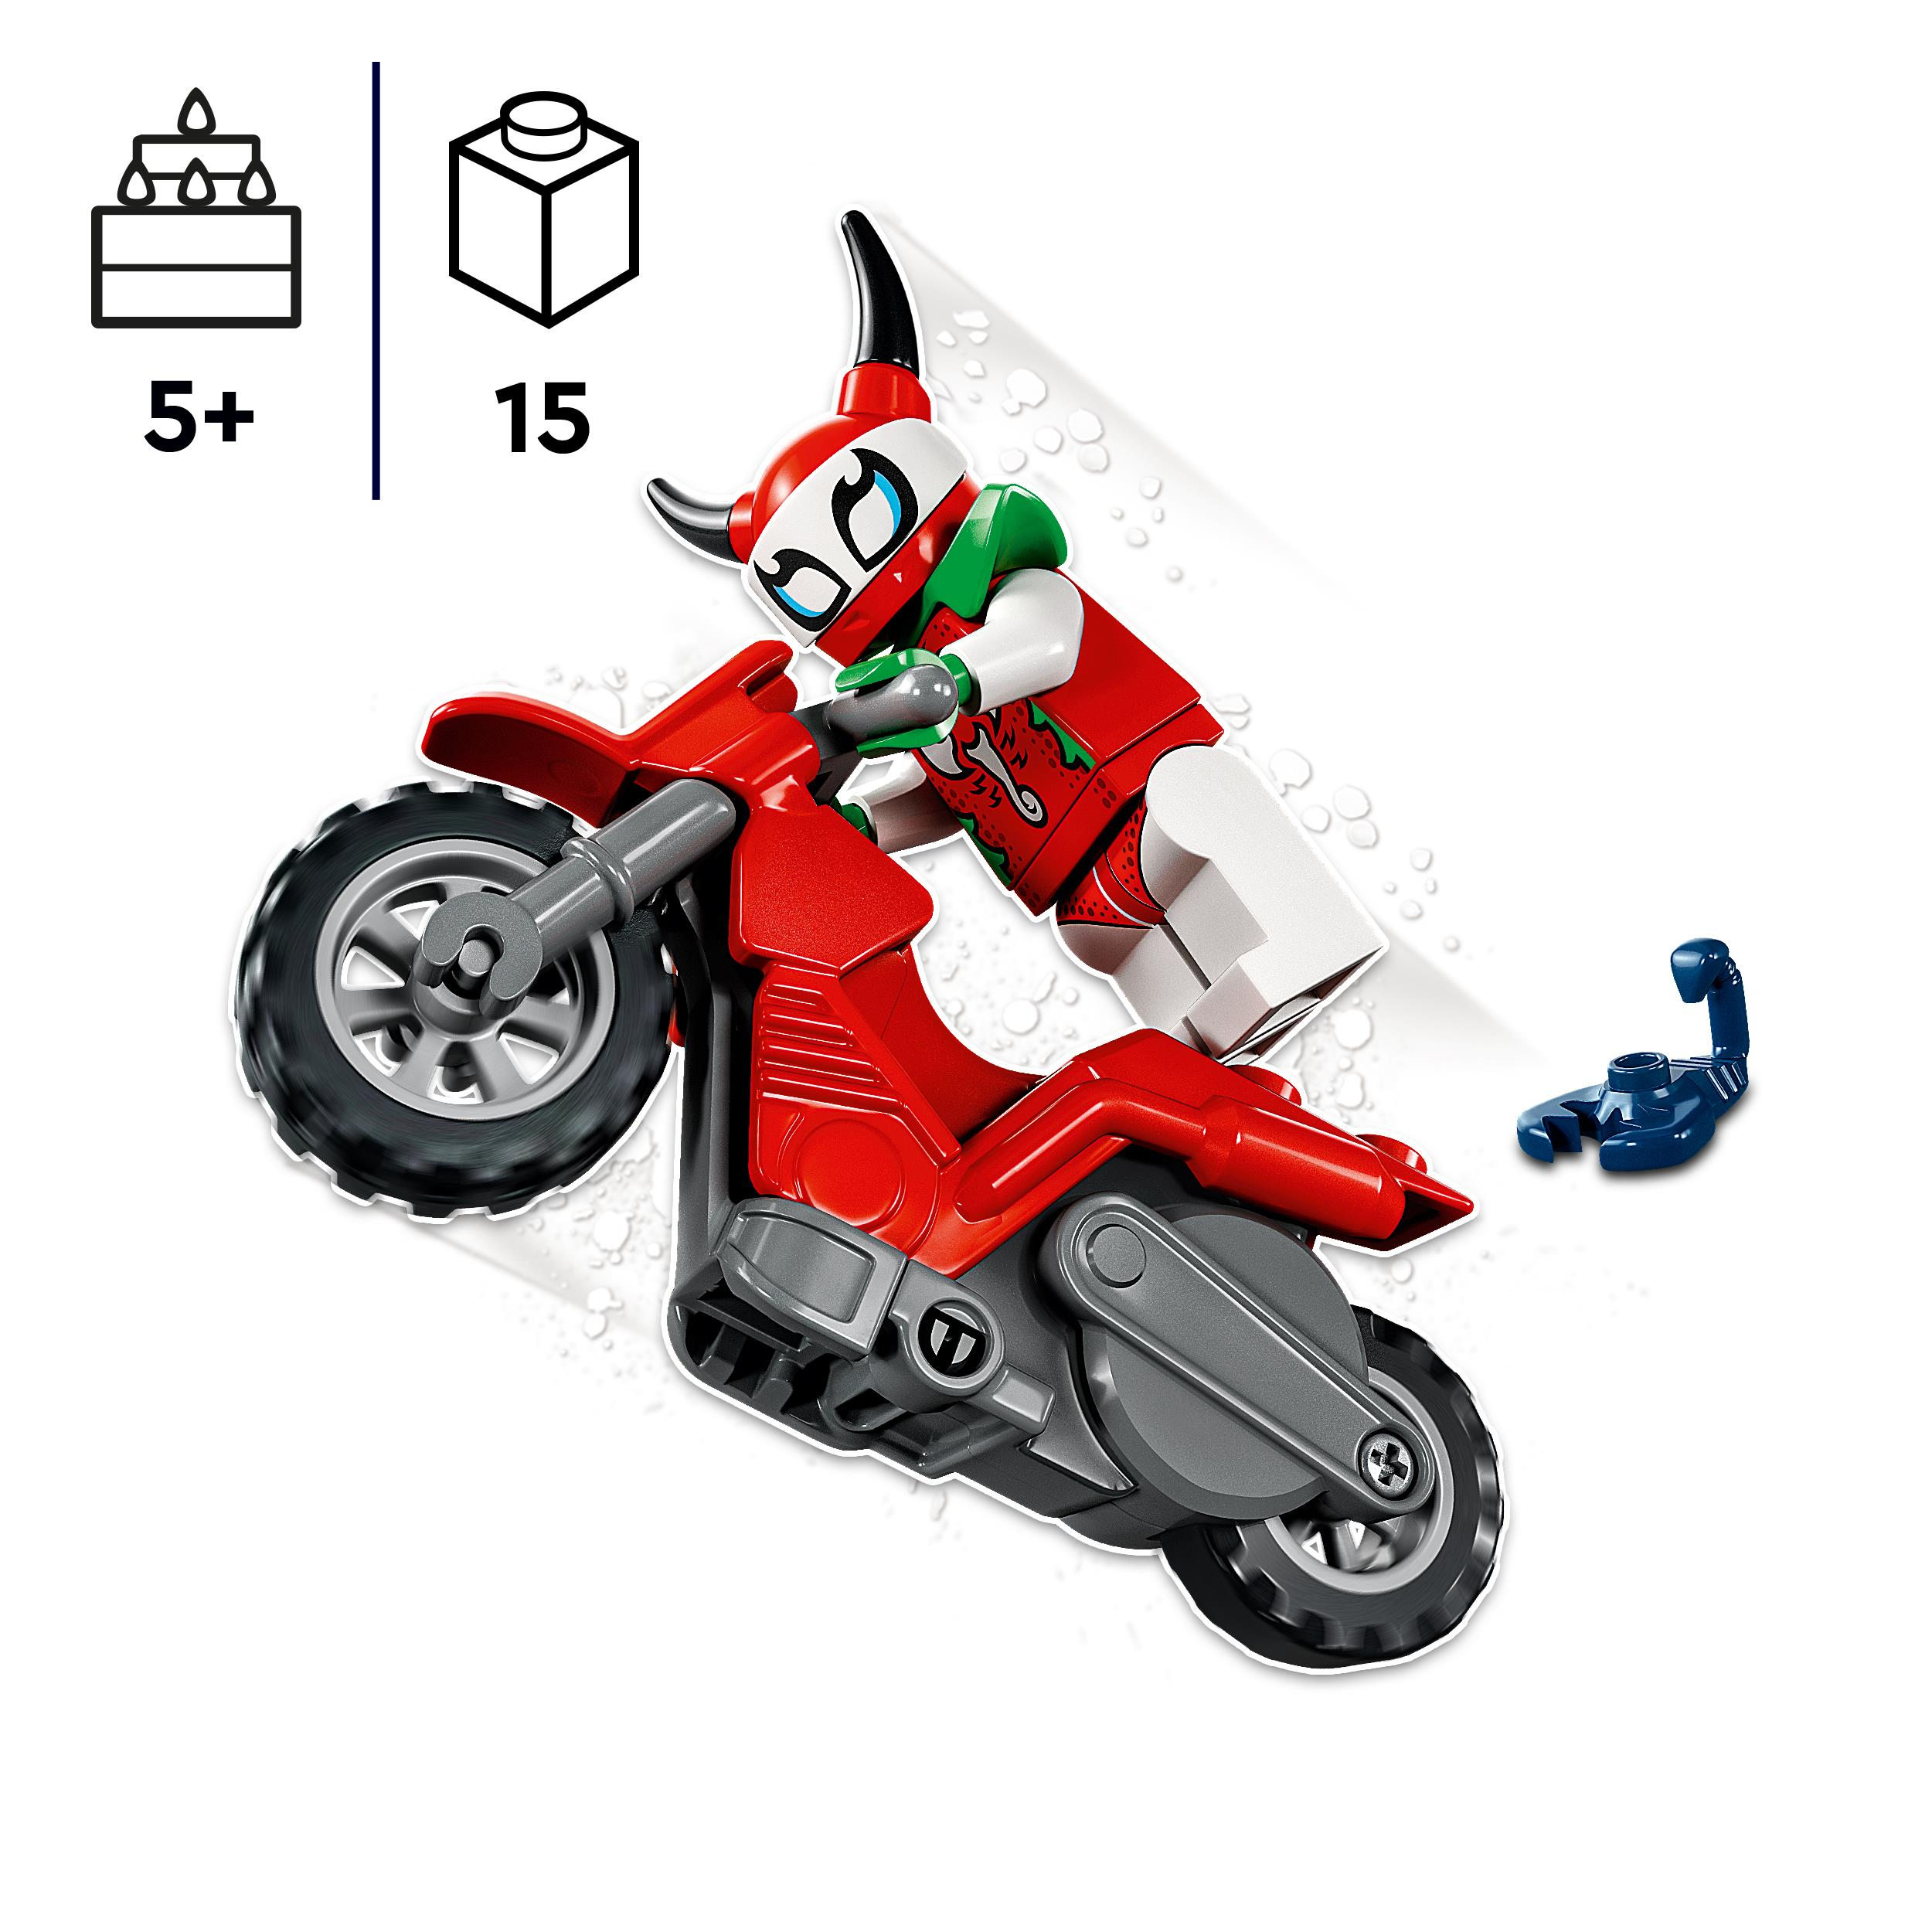 LEGO City Stuntz 60332 Skorpion-Stuntbike Bausatz, Mehrfarbig